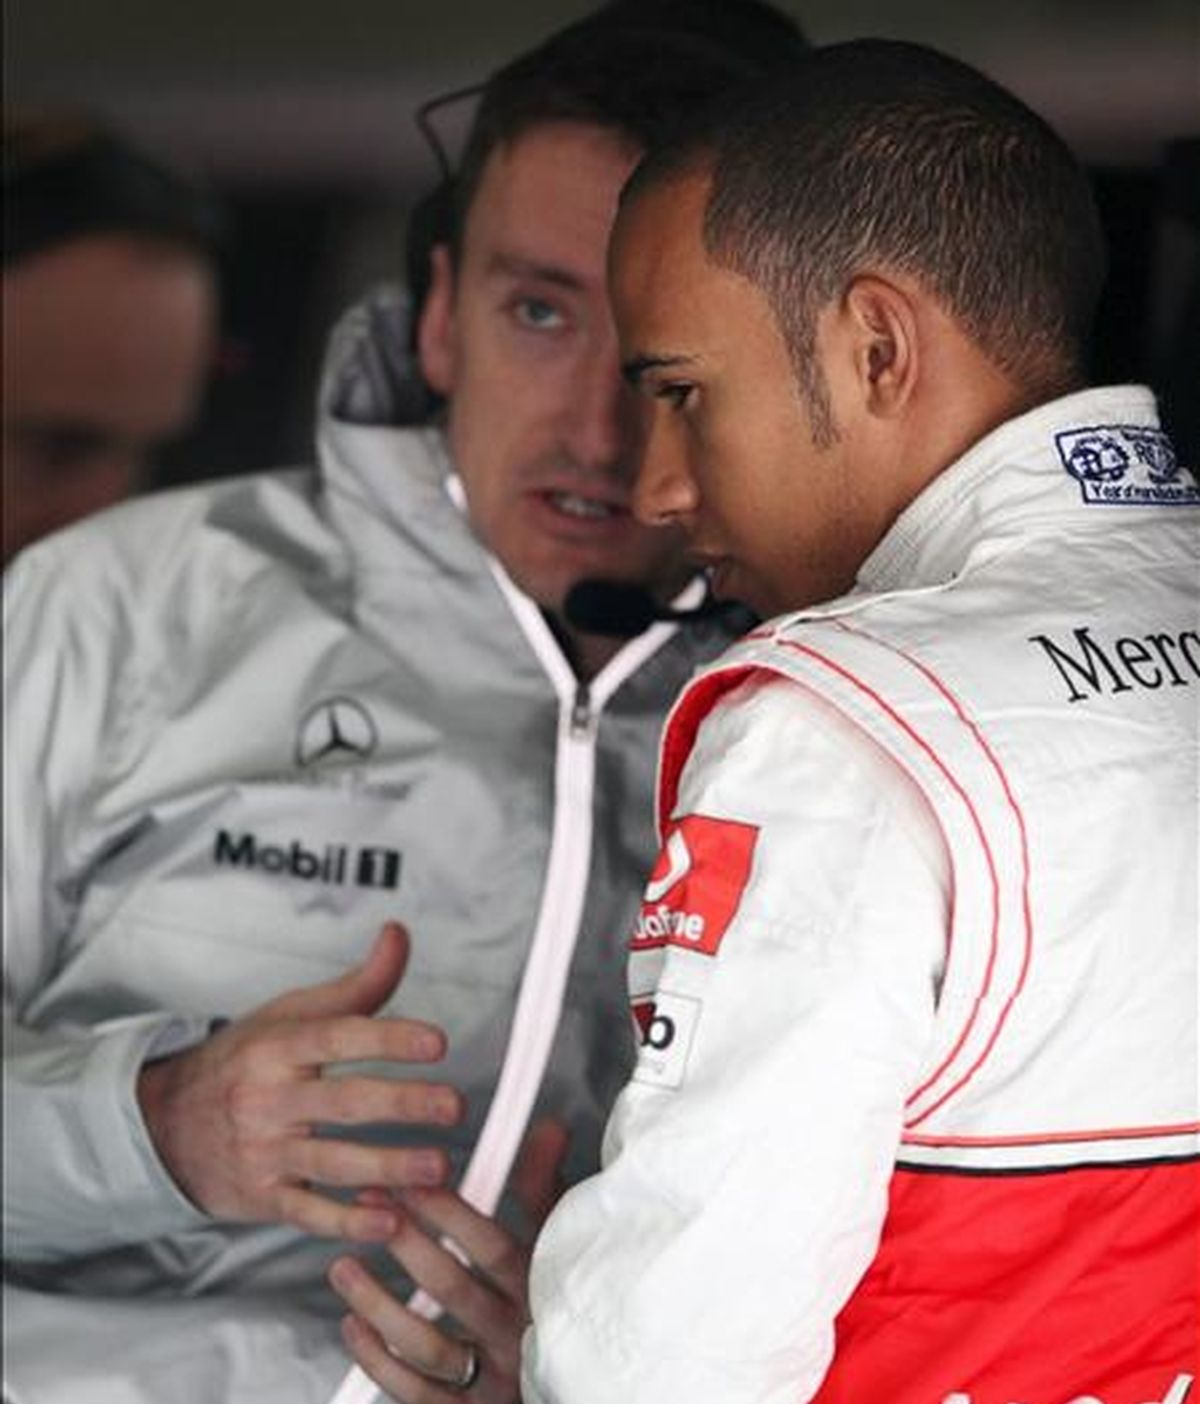 El piloto británica de Fórmula Uno Lewis Hamilton, de la escudería McLaren Mercedes, durante la jornada de entrenamientos libres celebrada en el circuito internacional de Shanghái (China). El Gran Premio de China de Fórmula Uno se disputará el próximo domingo. EFE